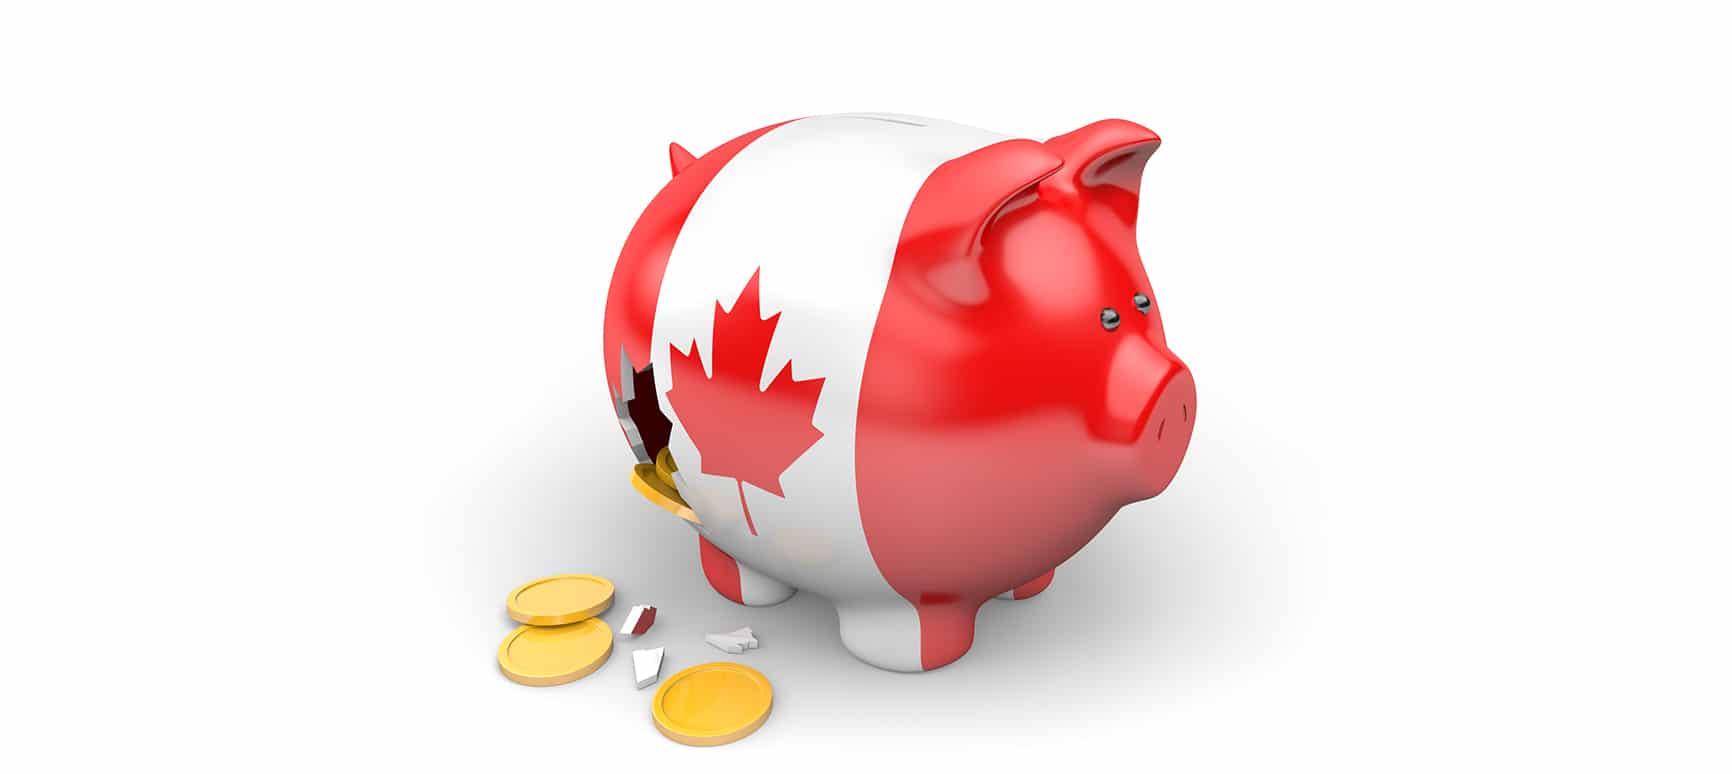 Canada’s economy as piggy bank